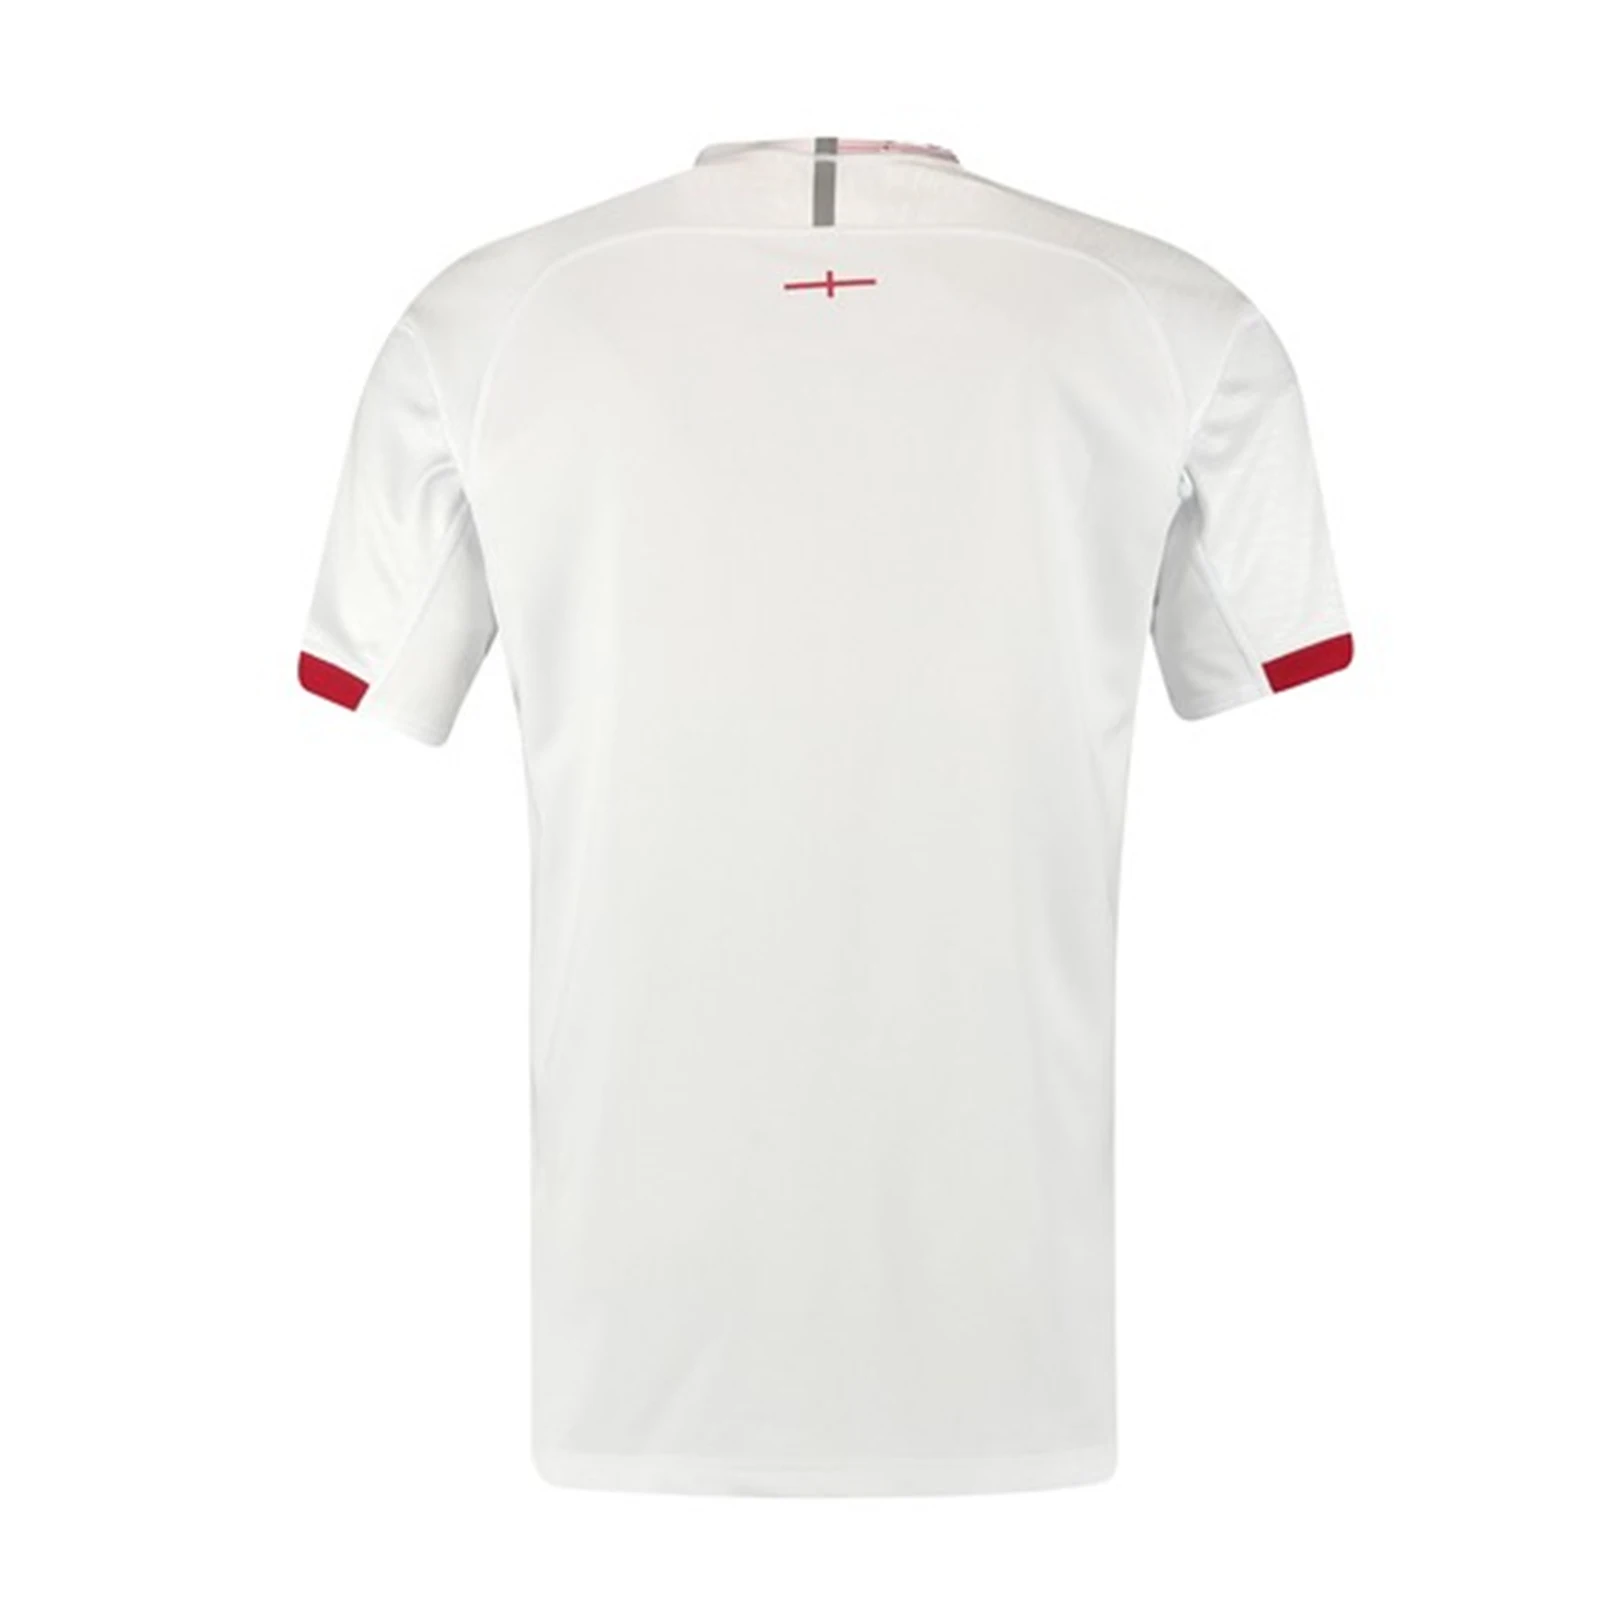 Спортивная рубашка из Джерси для регби в английском стиле S 3XL 2019|Майки регби| |